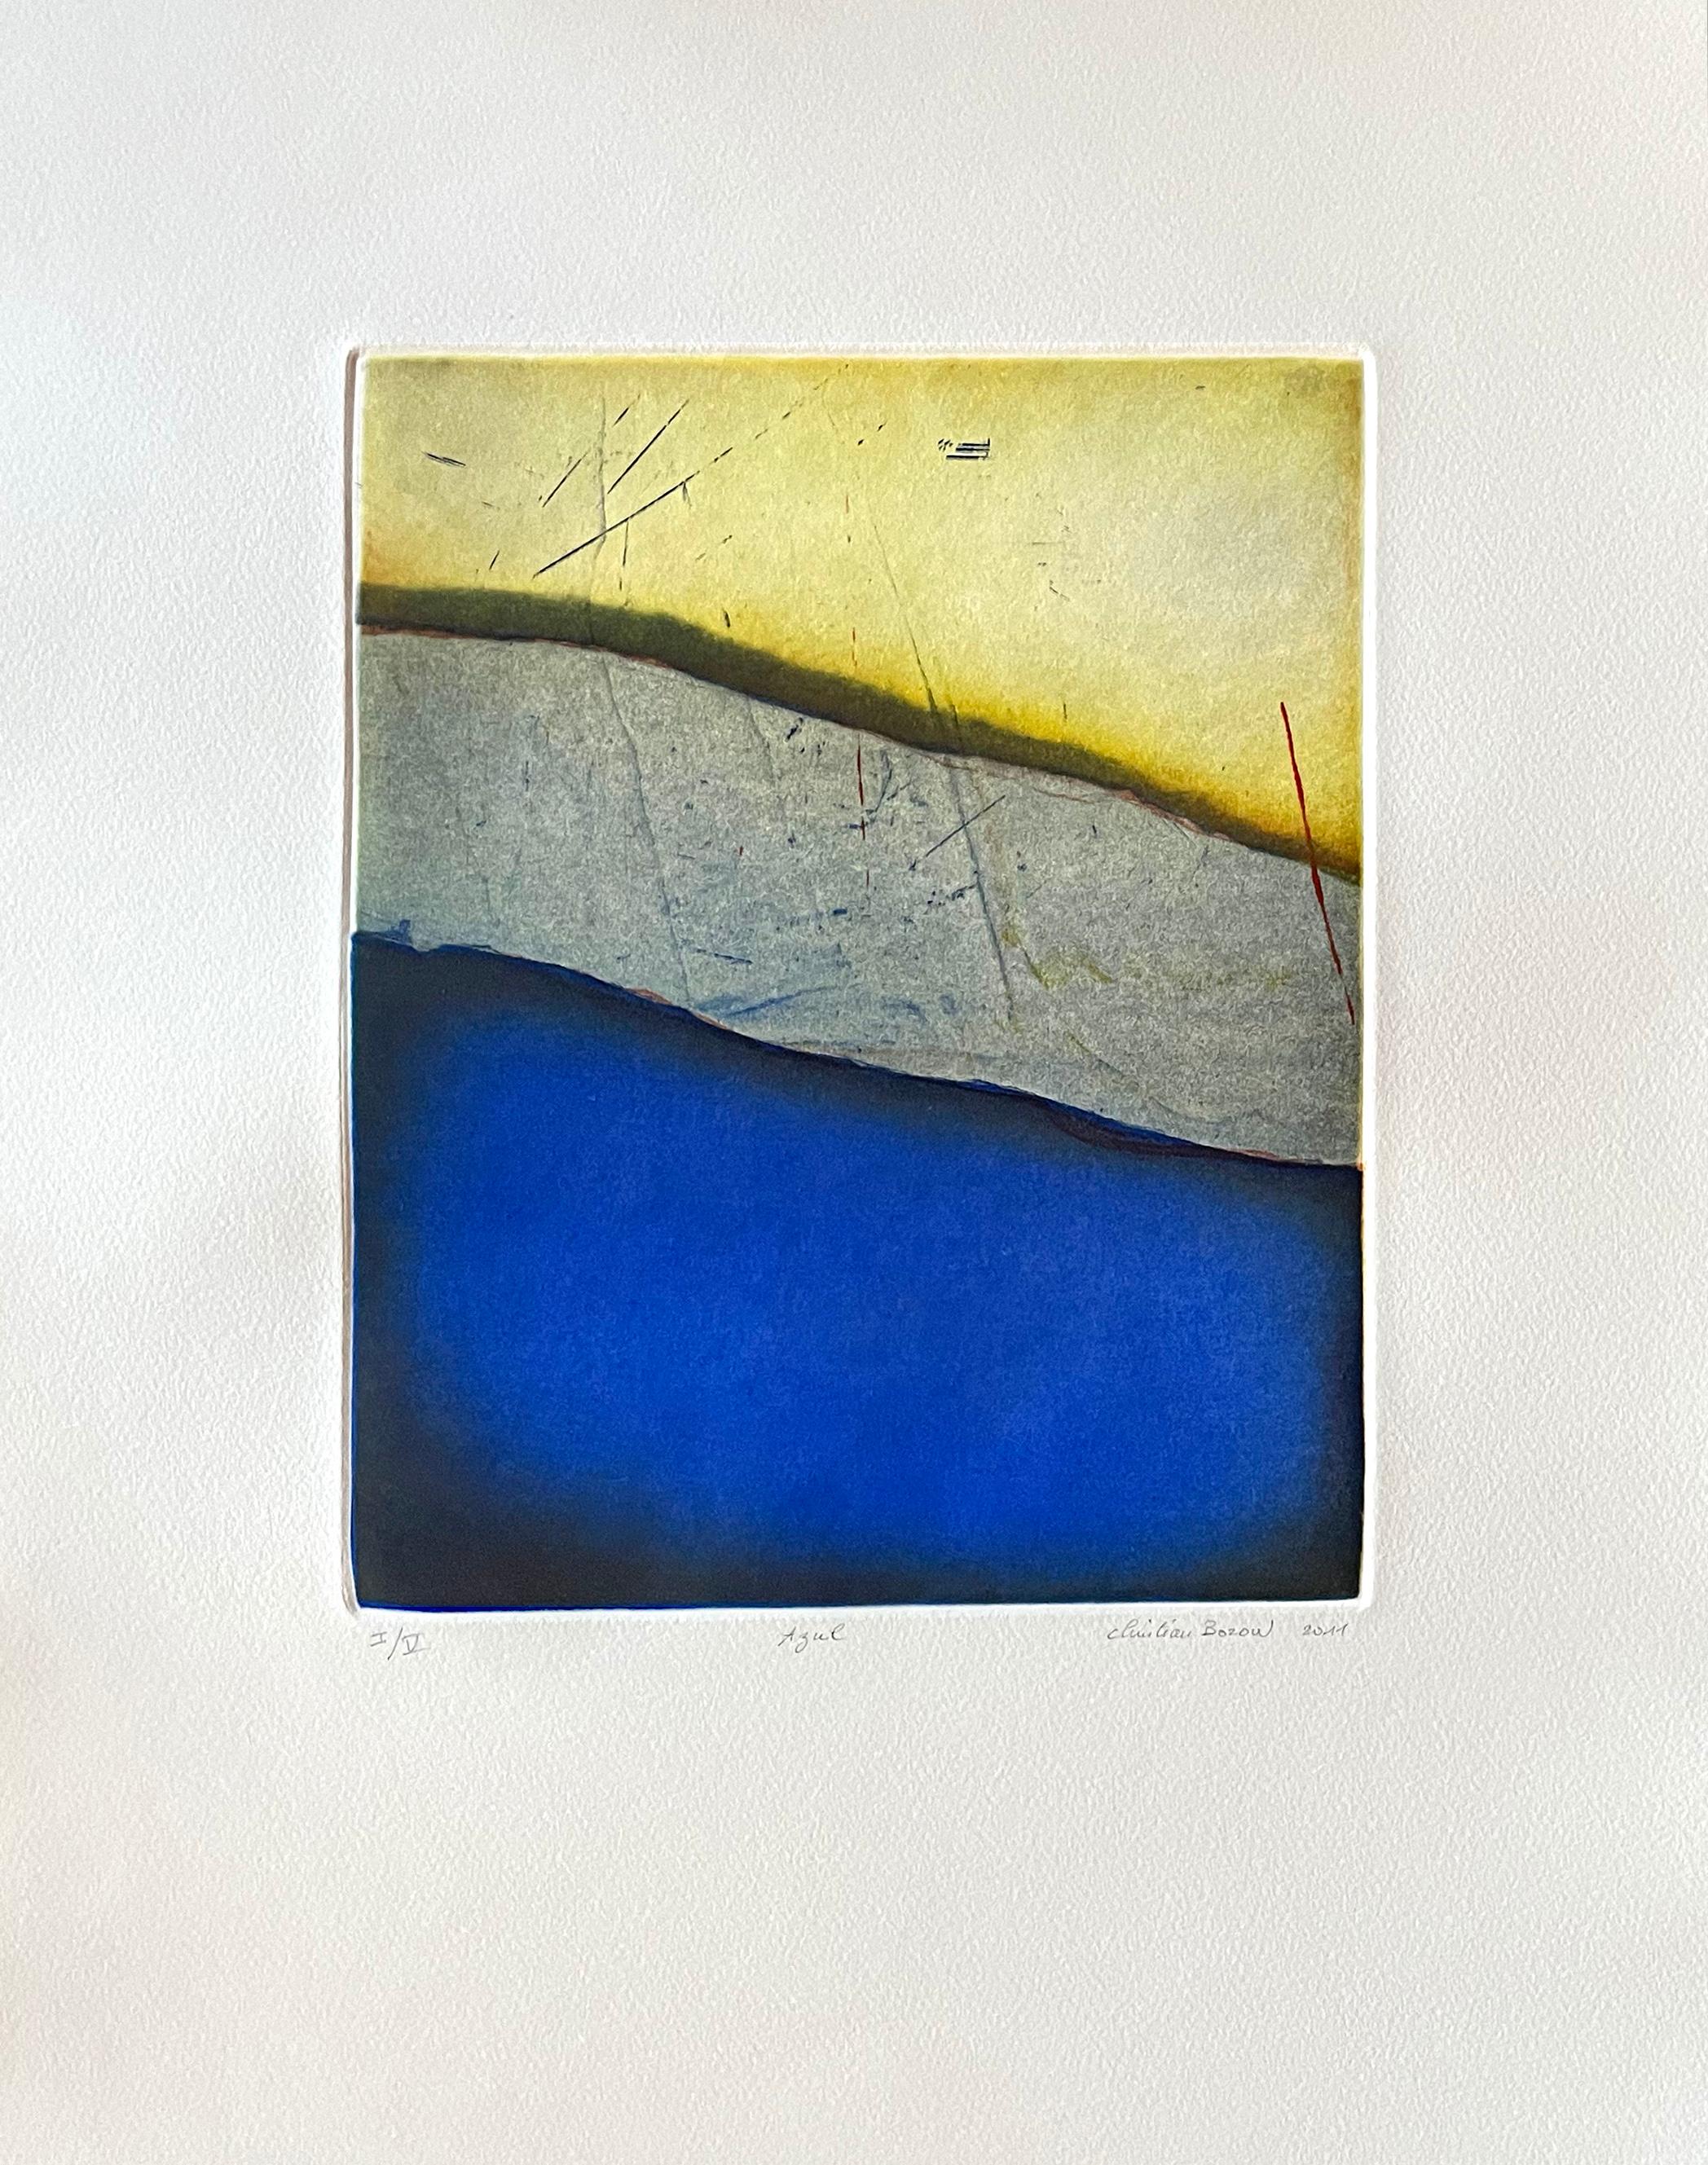 Esche und Boden von Azul – Print von Christian Bozon